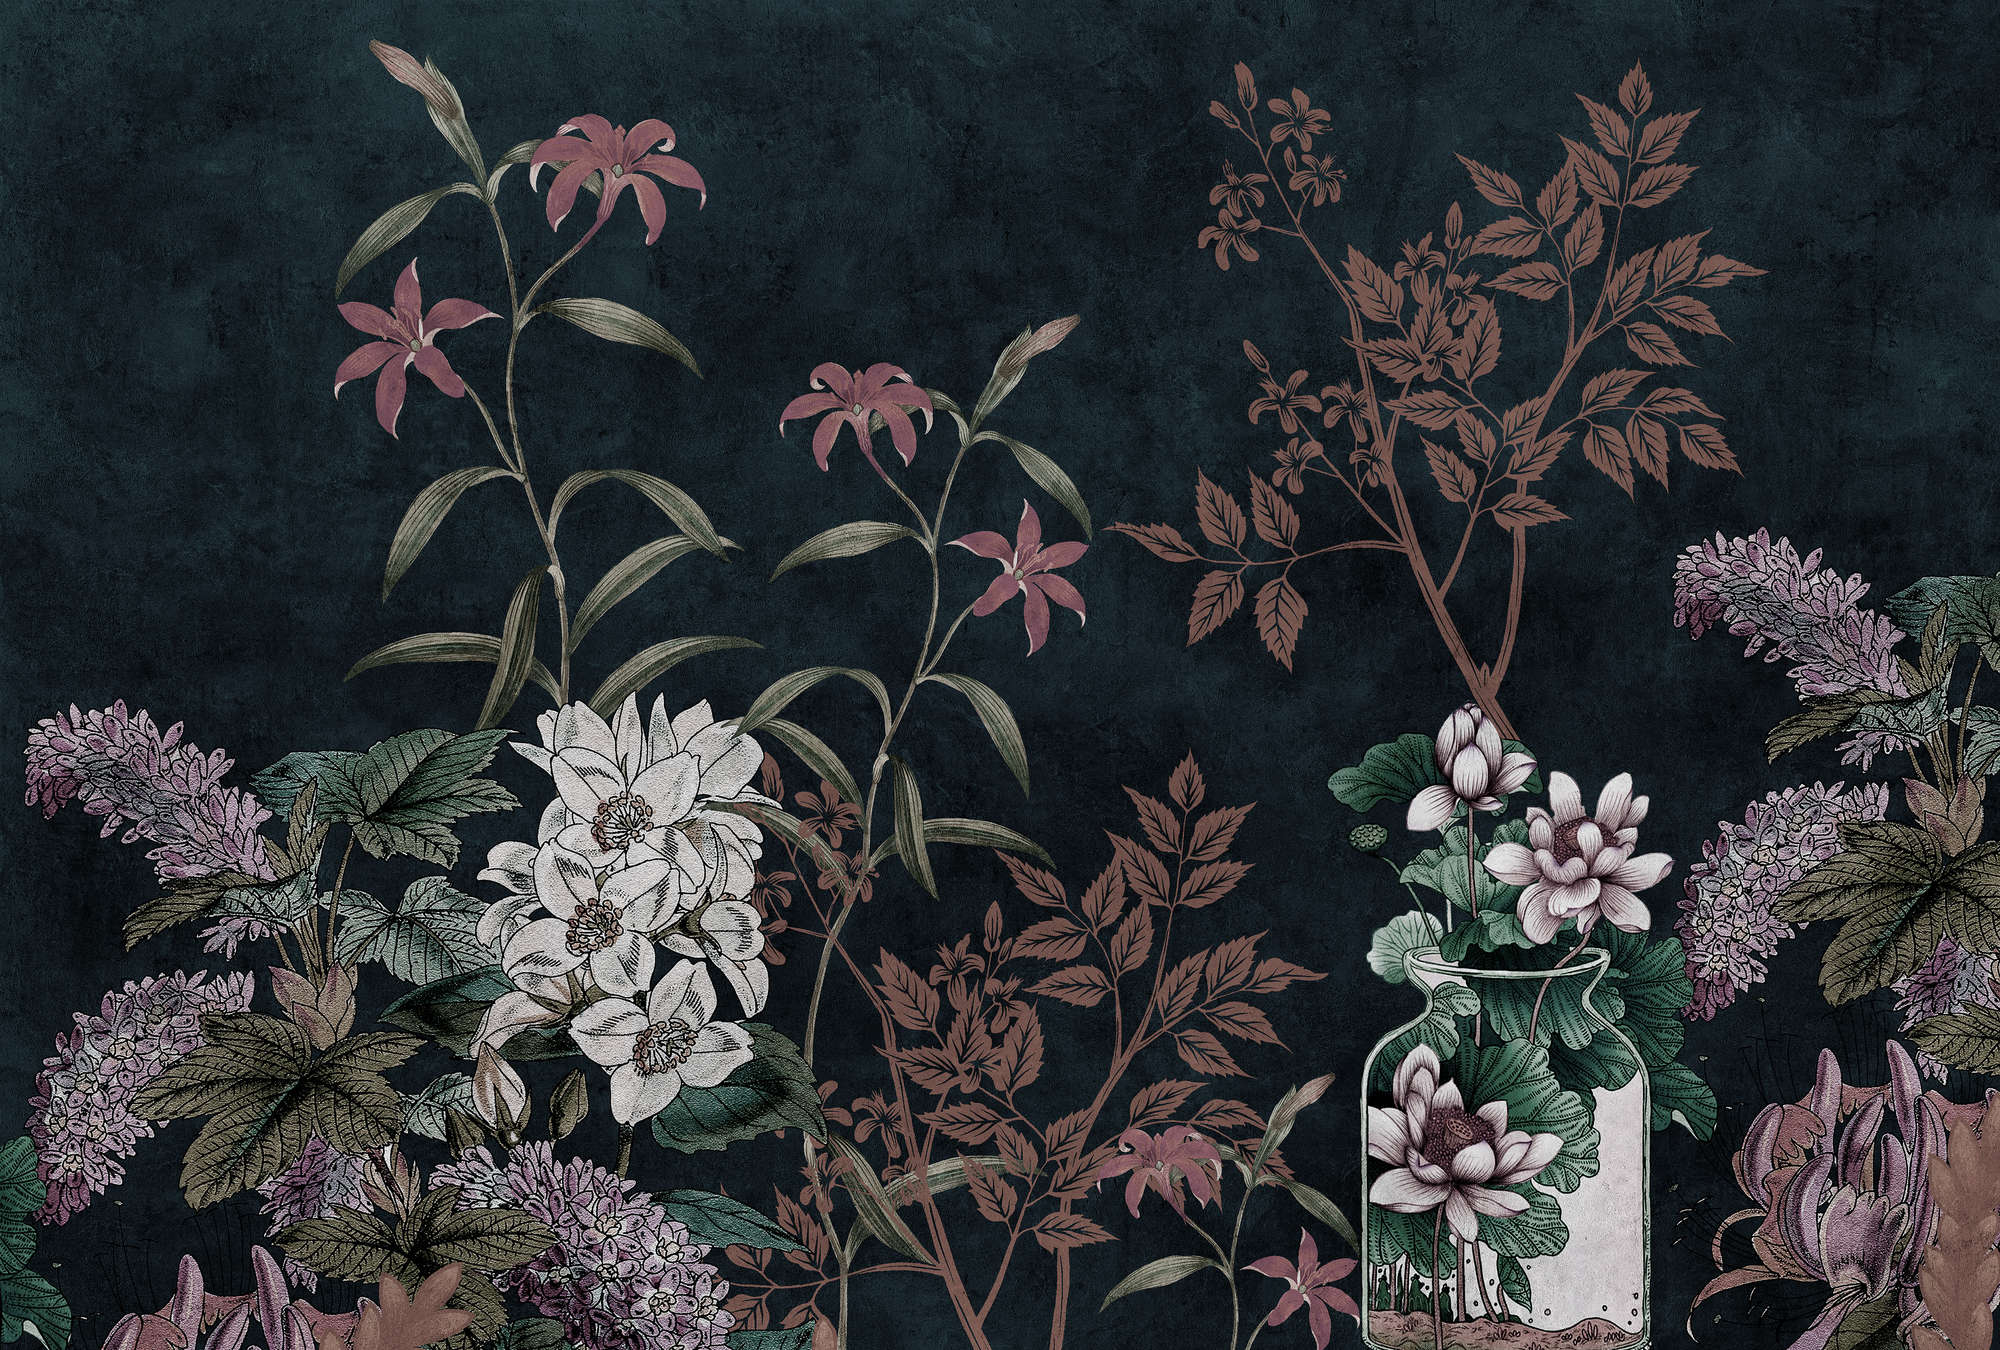             Dark Room 2 - Black Wallpaper Botanical Pattern Pink
        